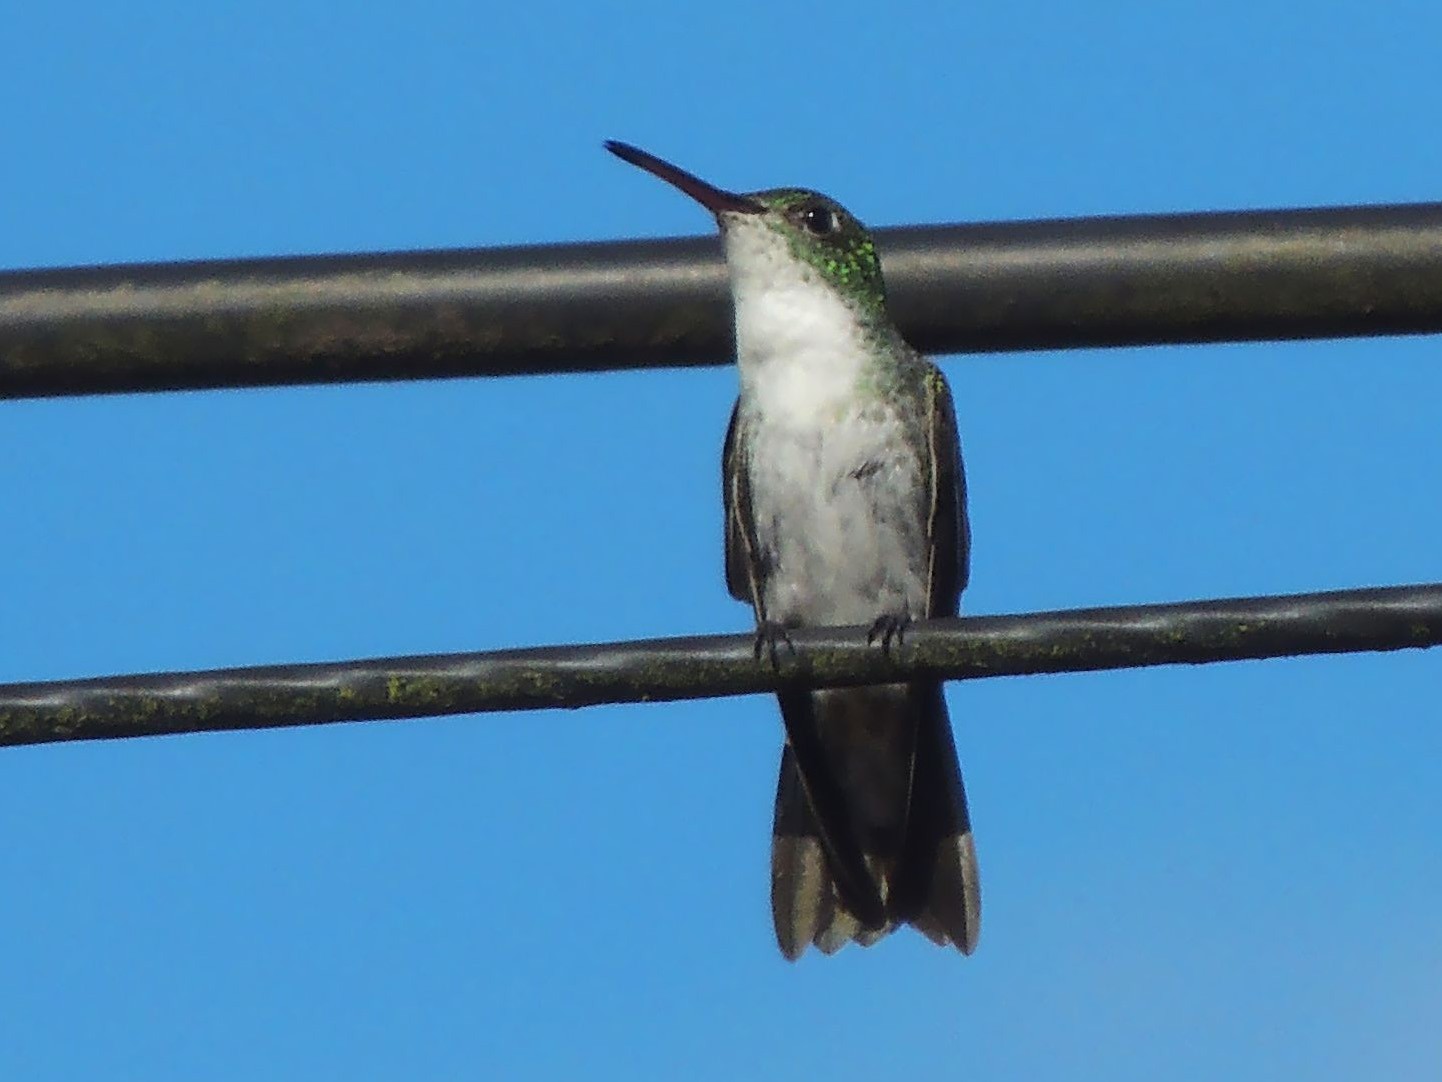 Green-and-white Hummingbird - Jorge Tiravanti